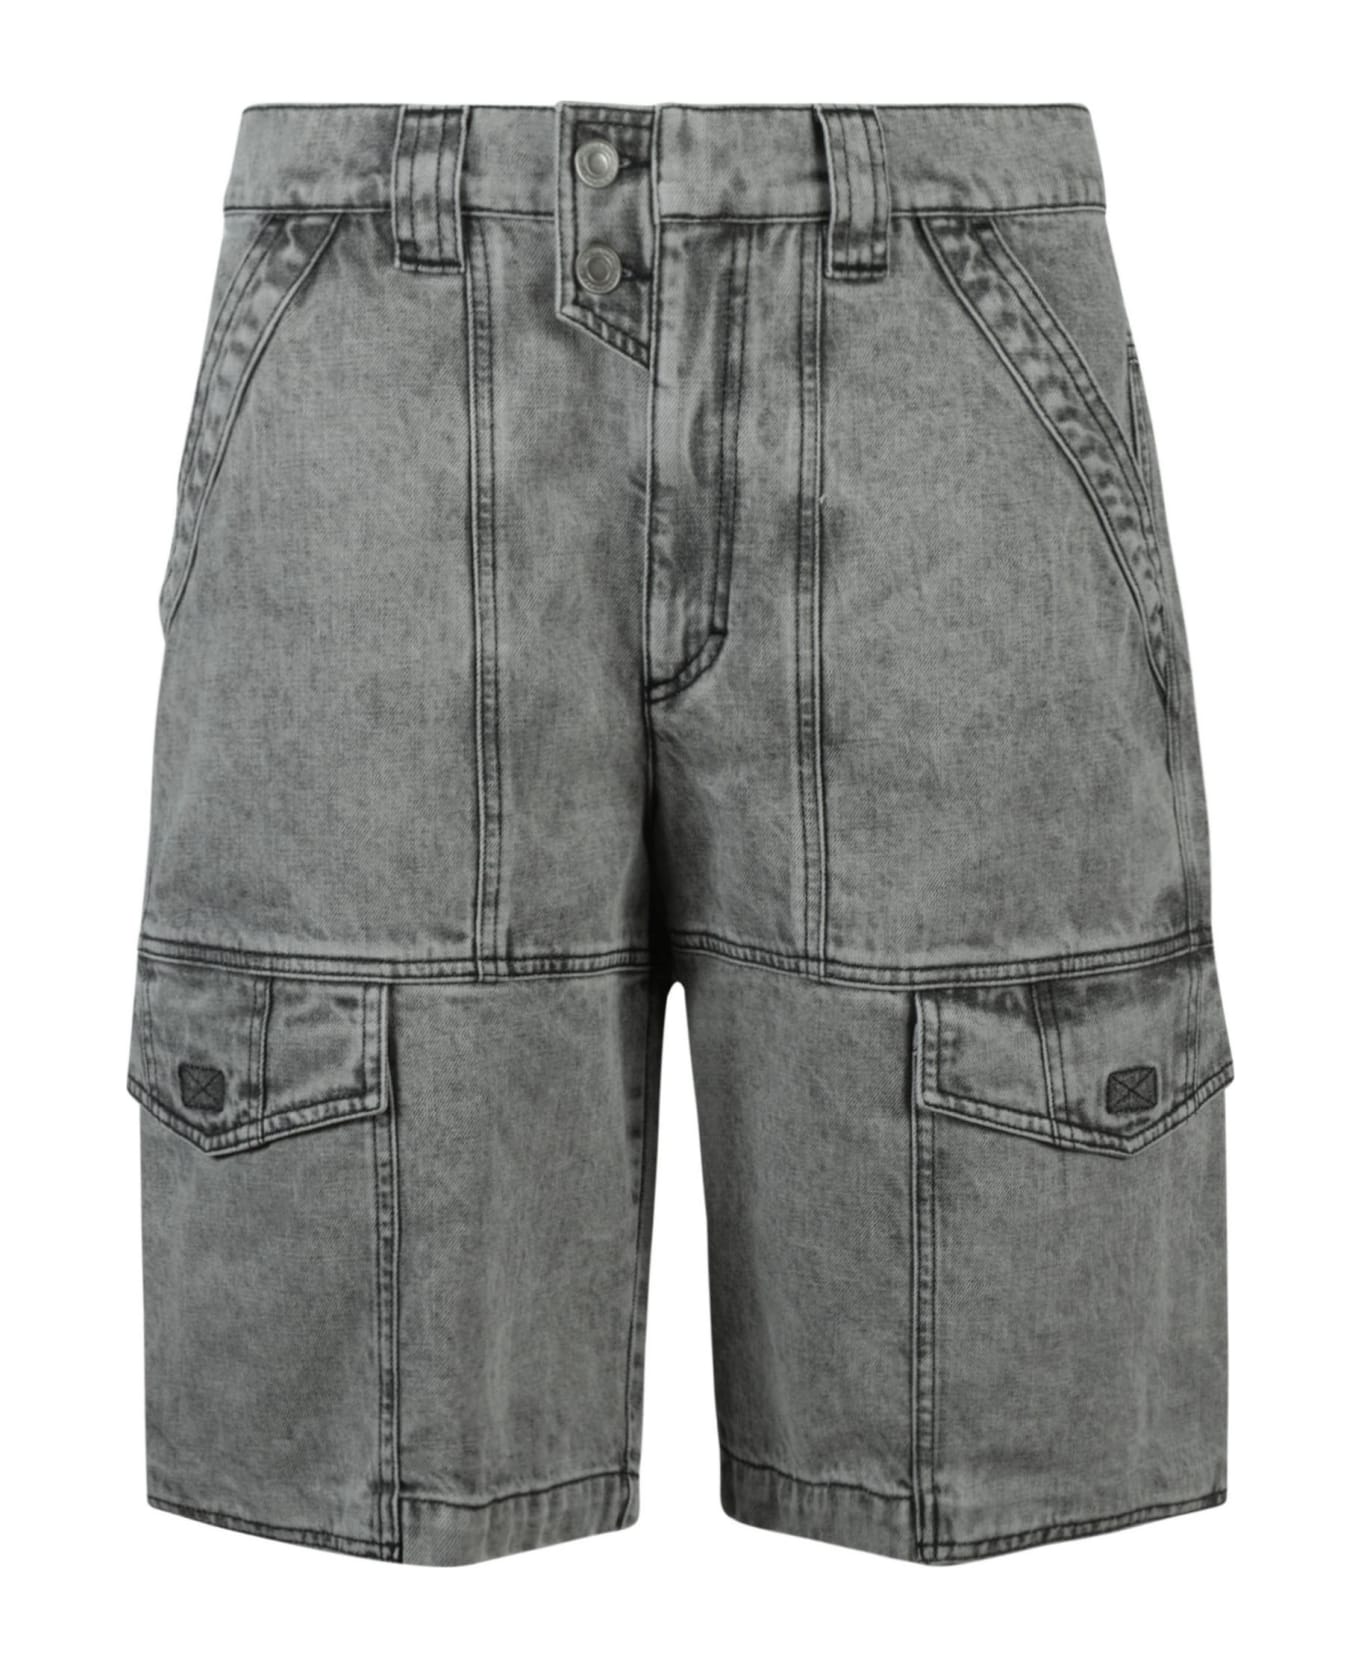 Isabel Marant Stonewashed Denim Shorts - Grey